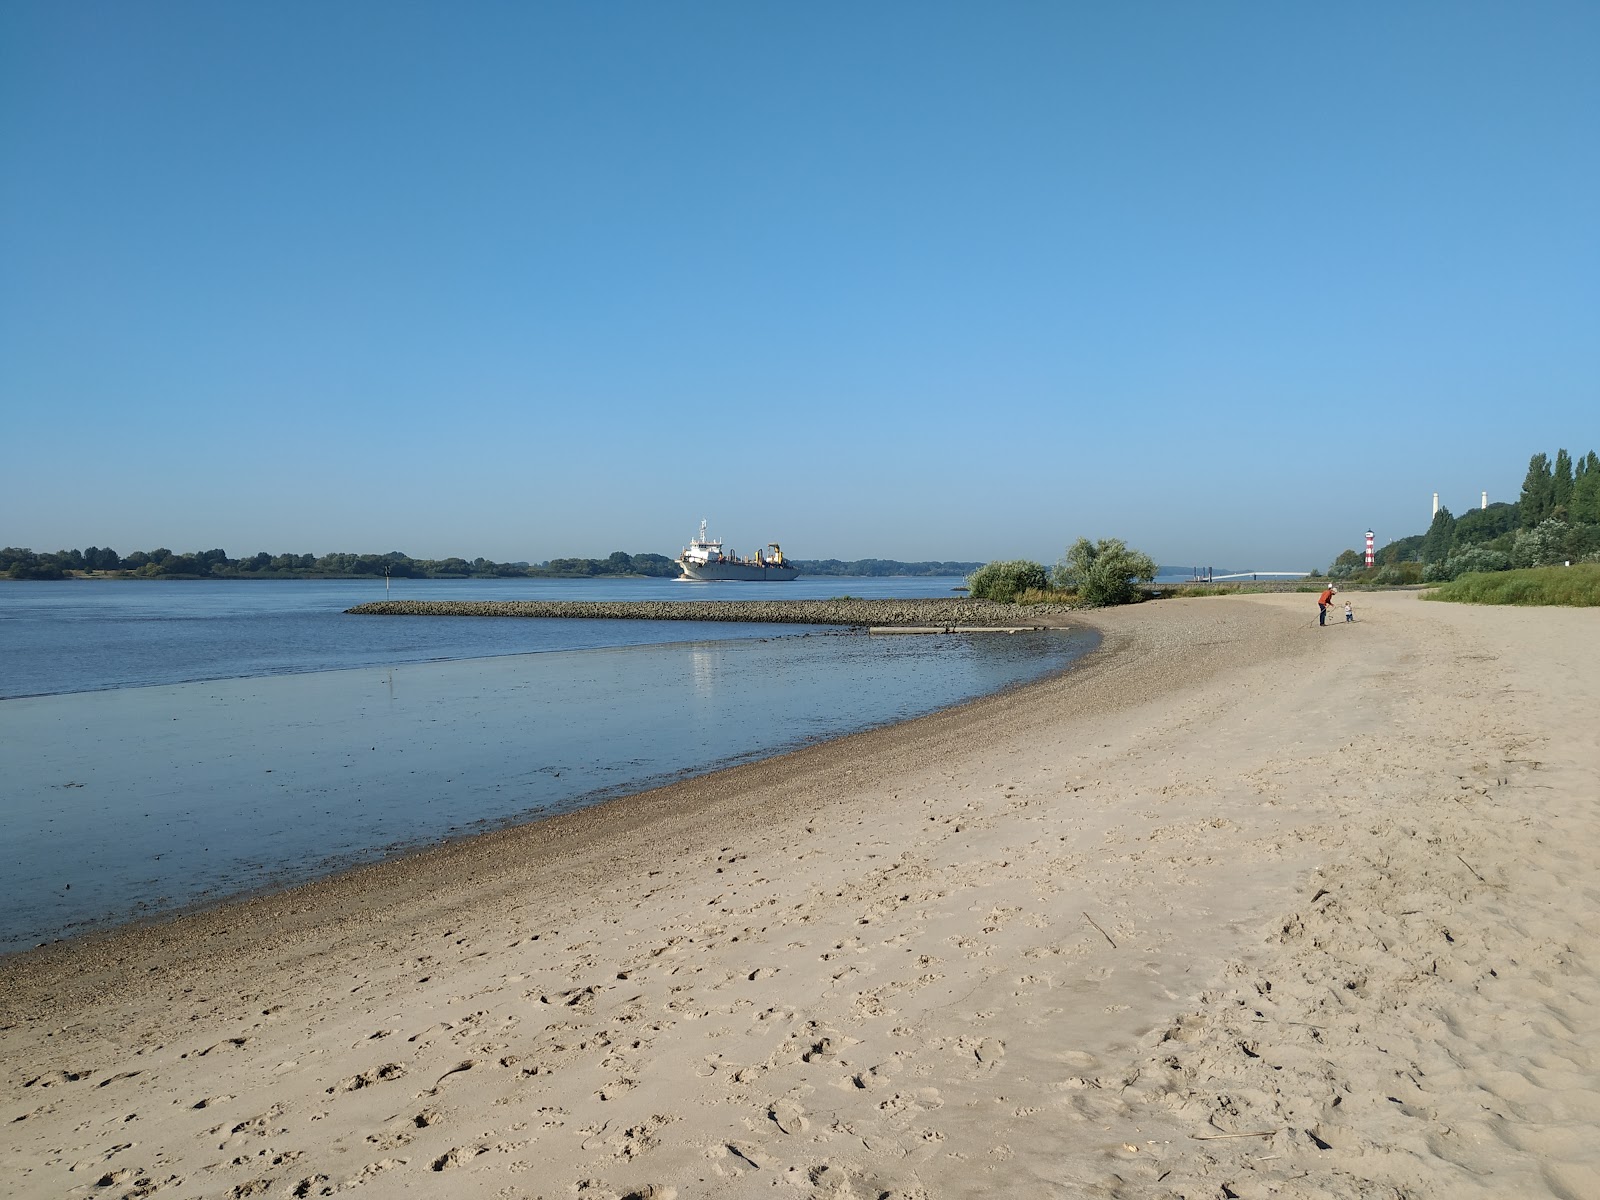 Foto av Falkensteiner Ufer med ljus fin sand yta